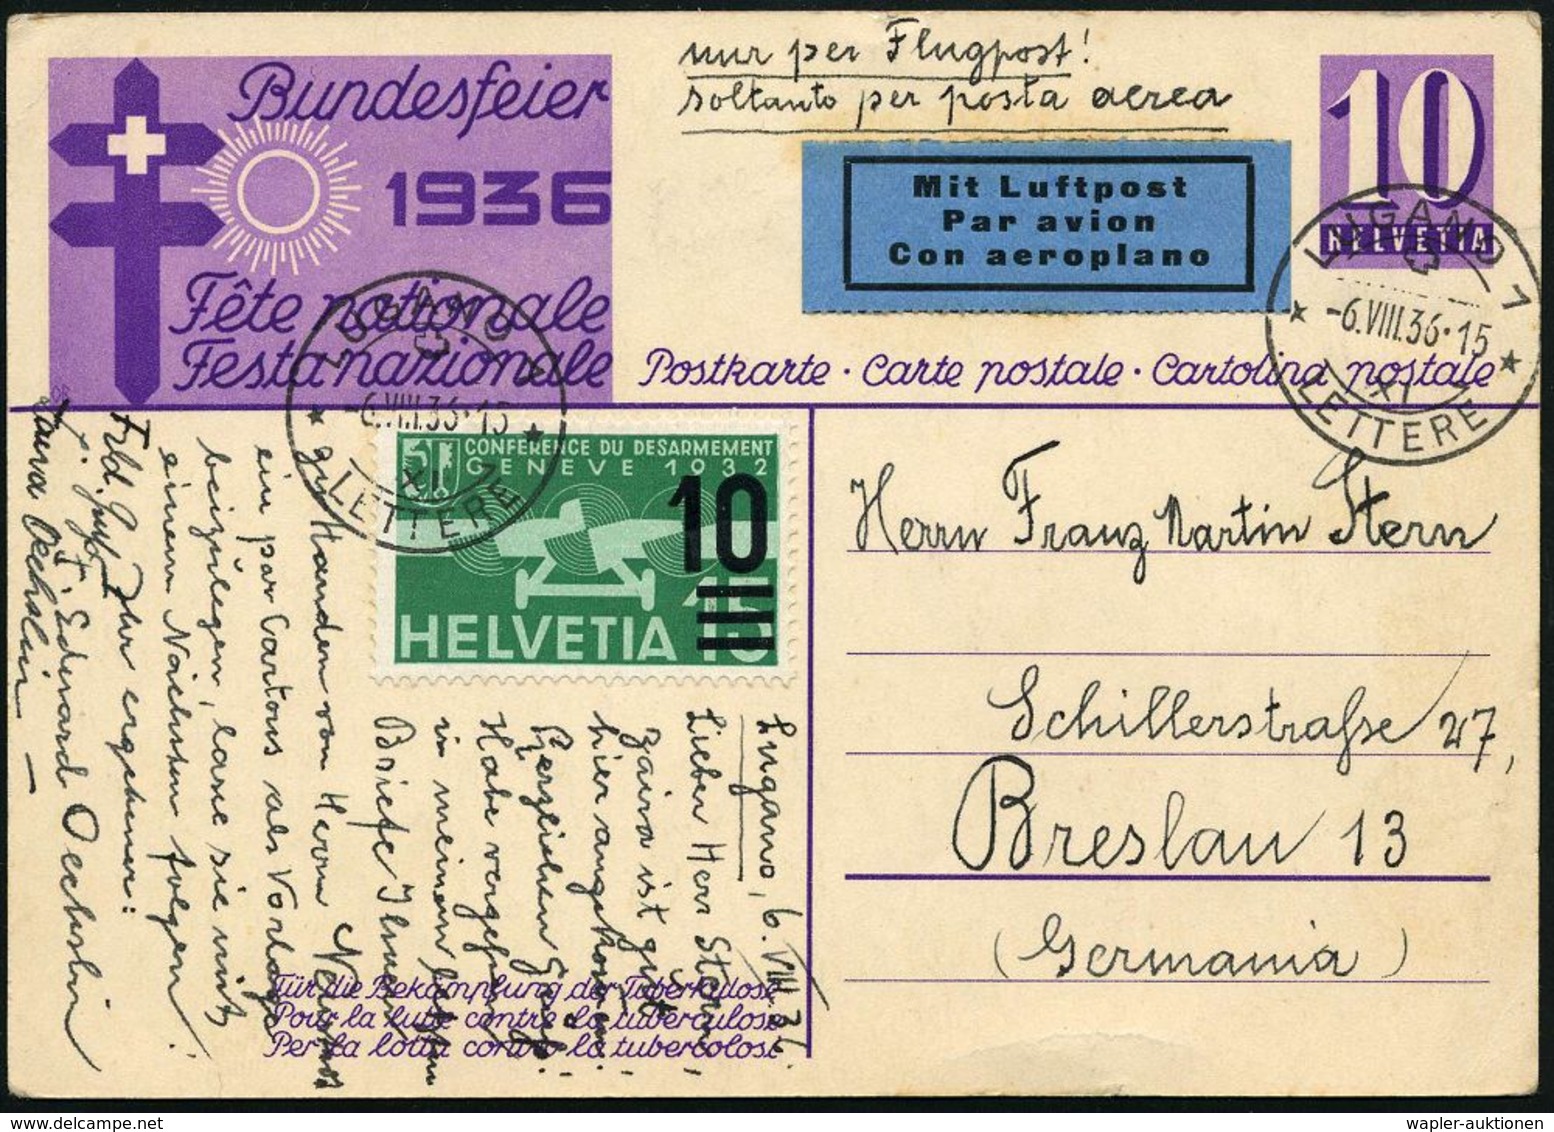 TUBERKULOSE / TBC-VORSORGE : SCHWEIZ 1936 (6.8.) 10 C. Bundesfeier-P., Lila: Kampf Der Tbc (Mi.P 170/01) + Zusatzfrankat - Maladies